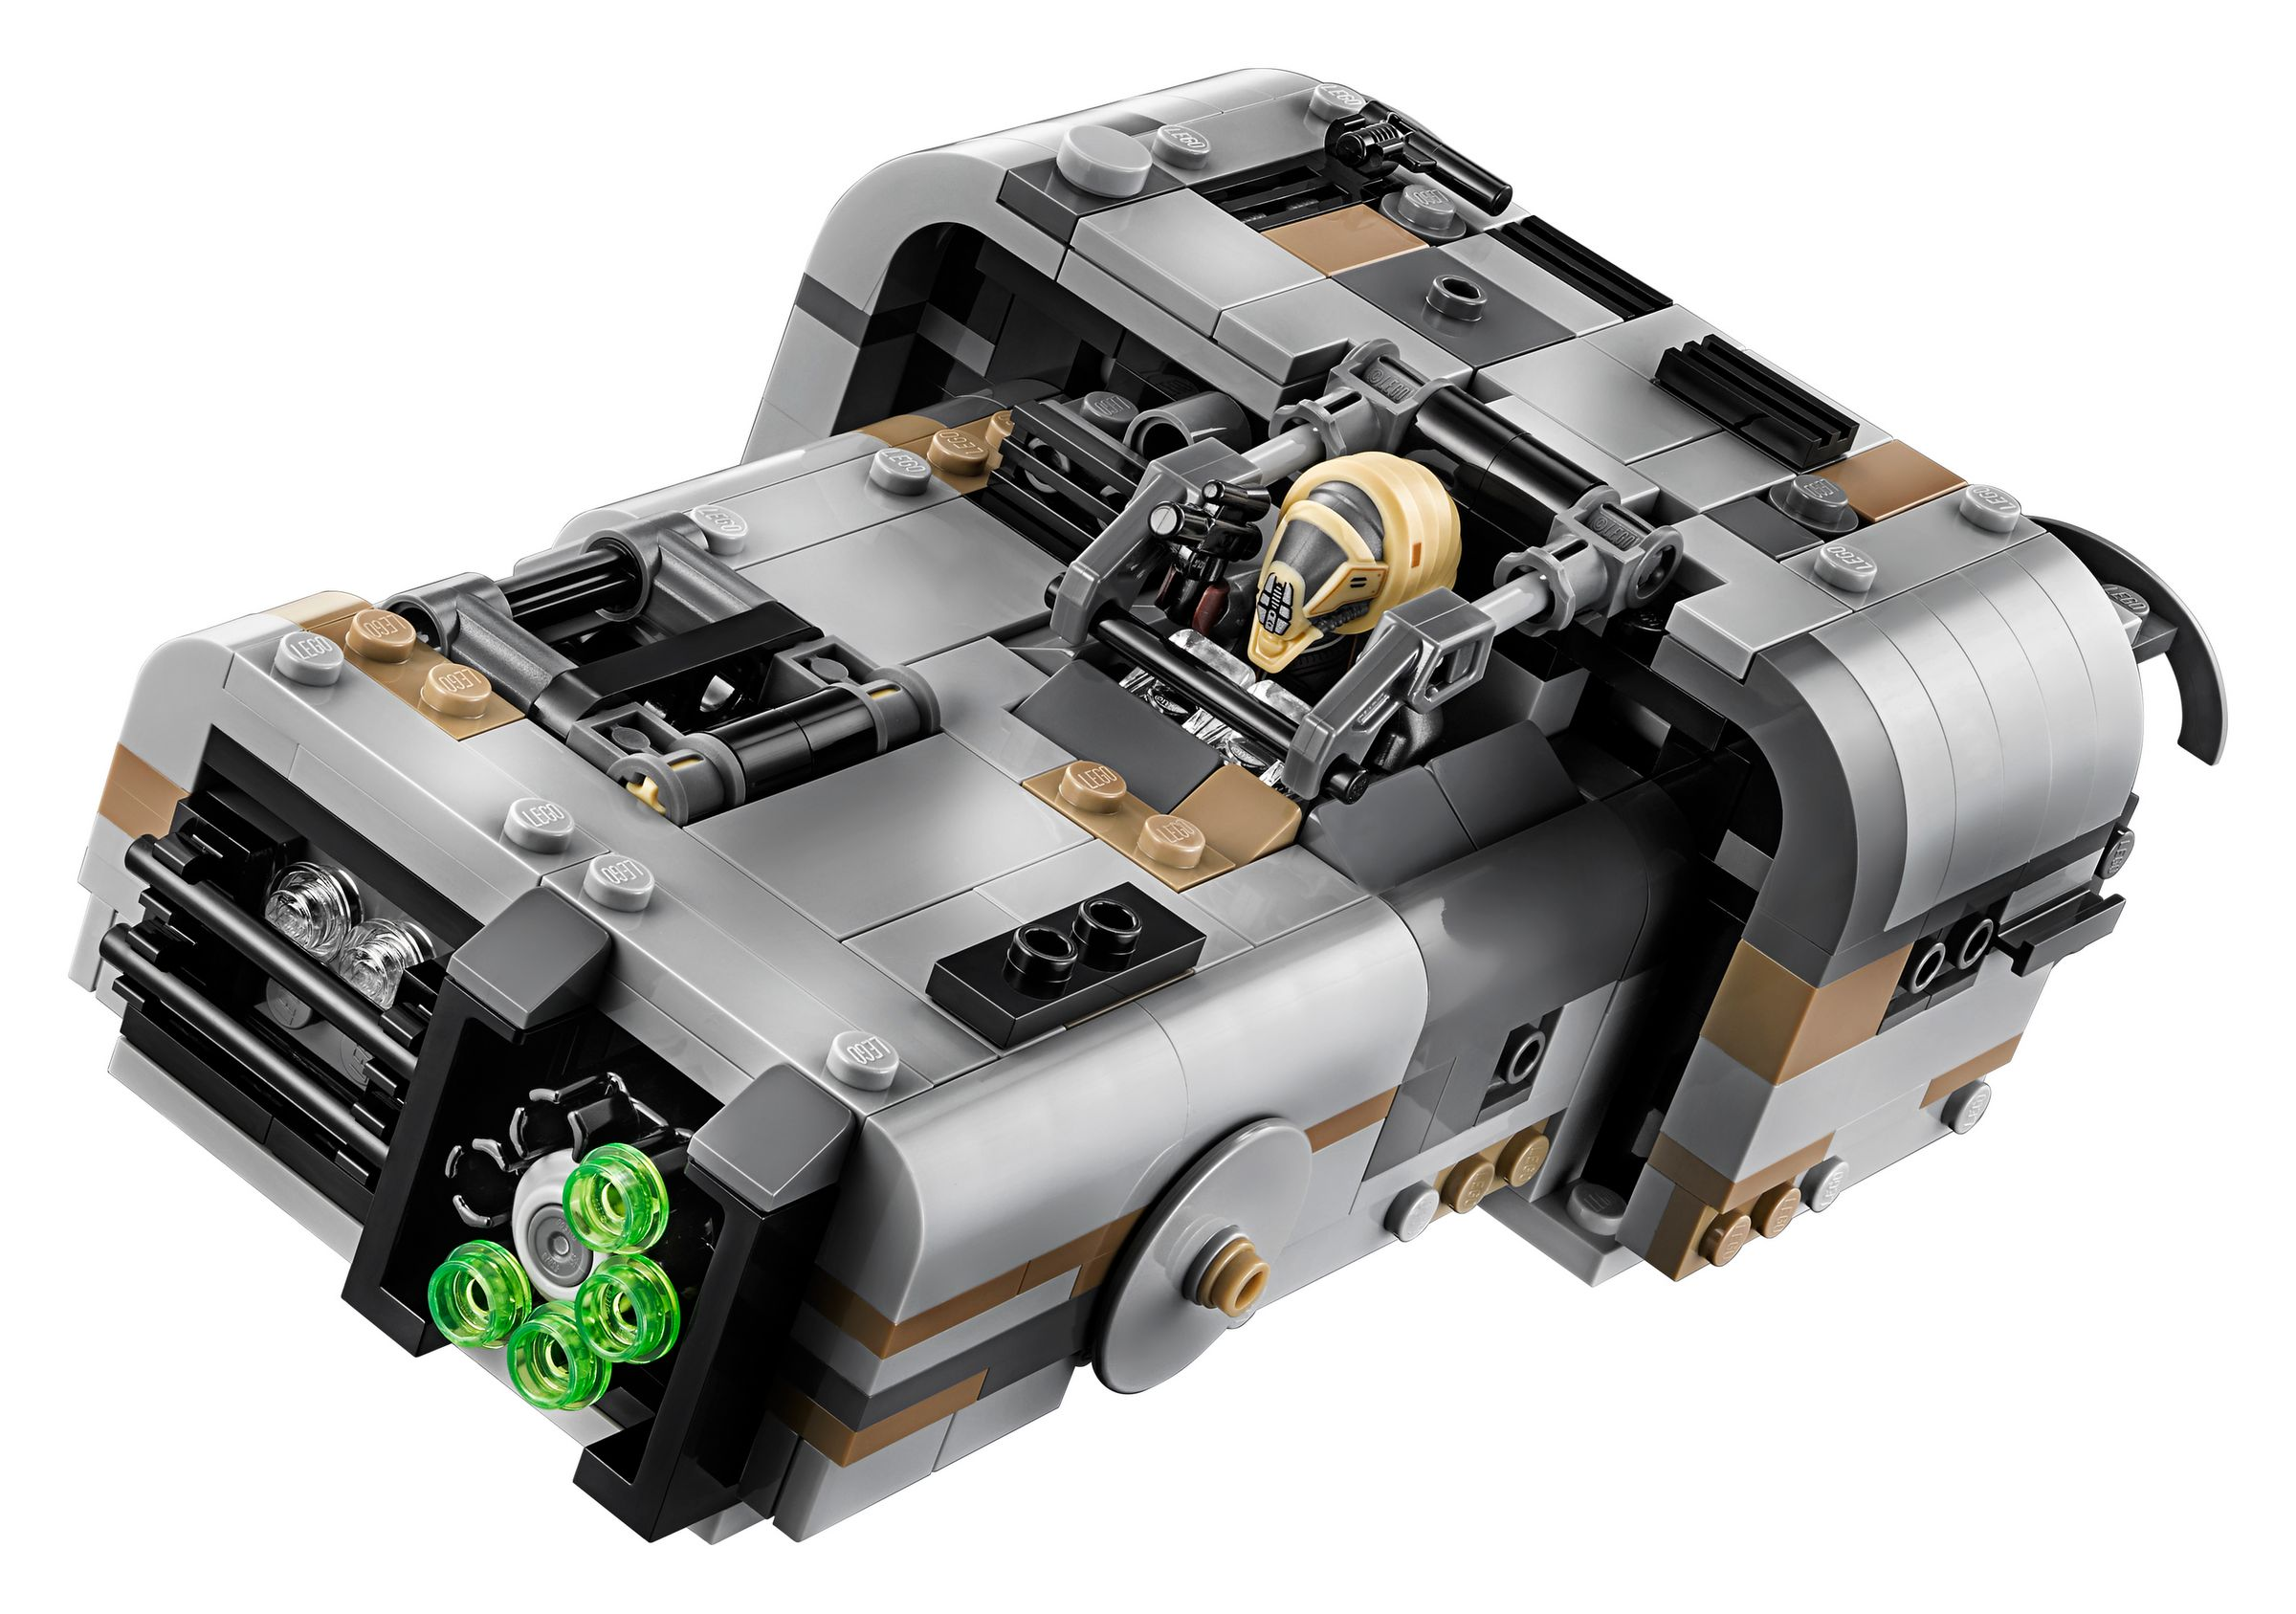 Bausatz Molochs LEGO Landspeeder Star Wars™ 75210